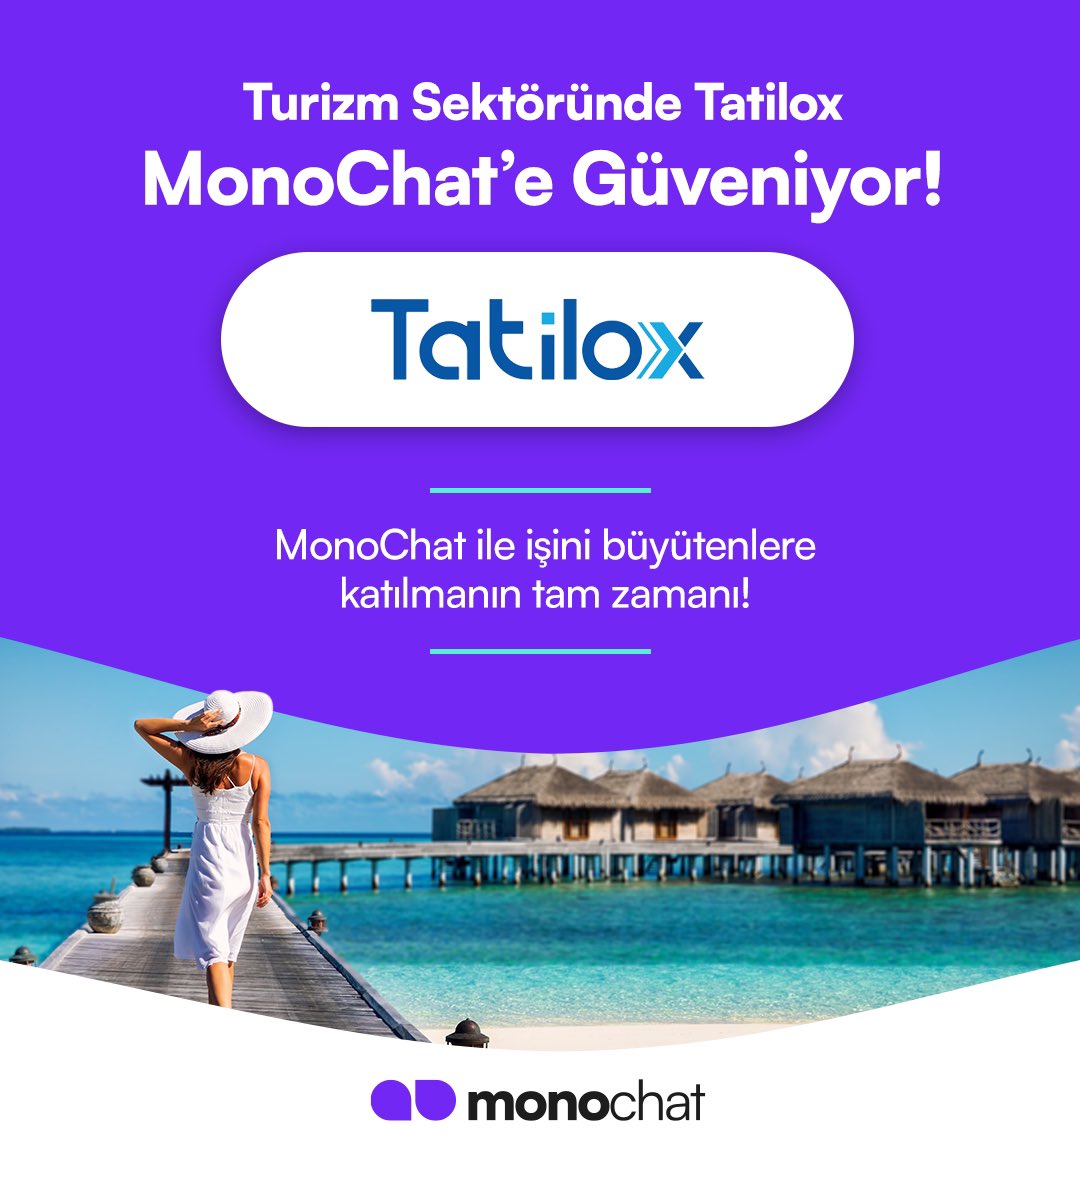 MonoChat ile işini büyütenlere katılmanın tam zamanı!

Her sektöre özgü çözümlerimizden yararlanmak ve MonoChat ile tanışmak için bizimle iletişime geçmeyi unutmayın.

#MonoChat #Turizm #GeziRehberi